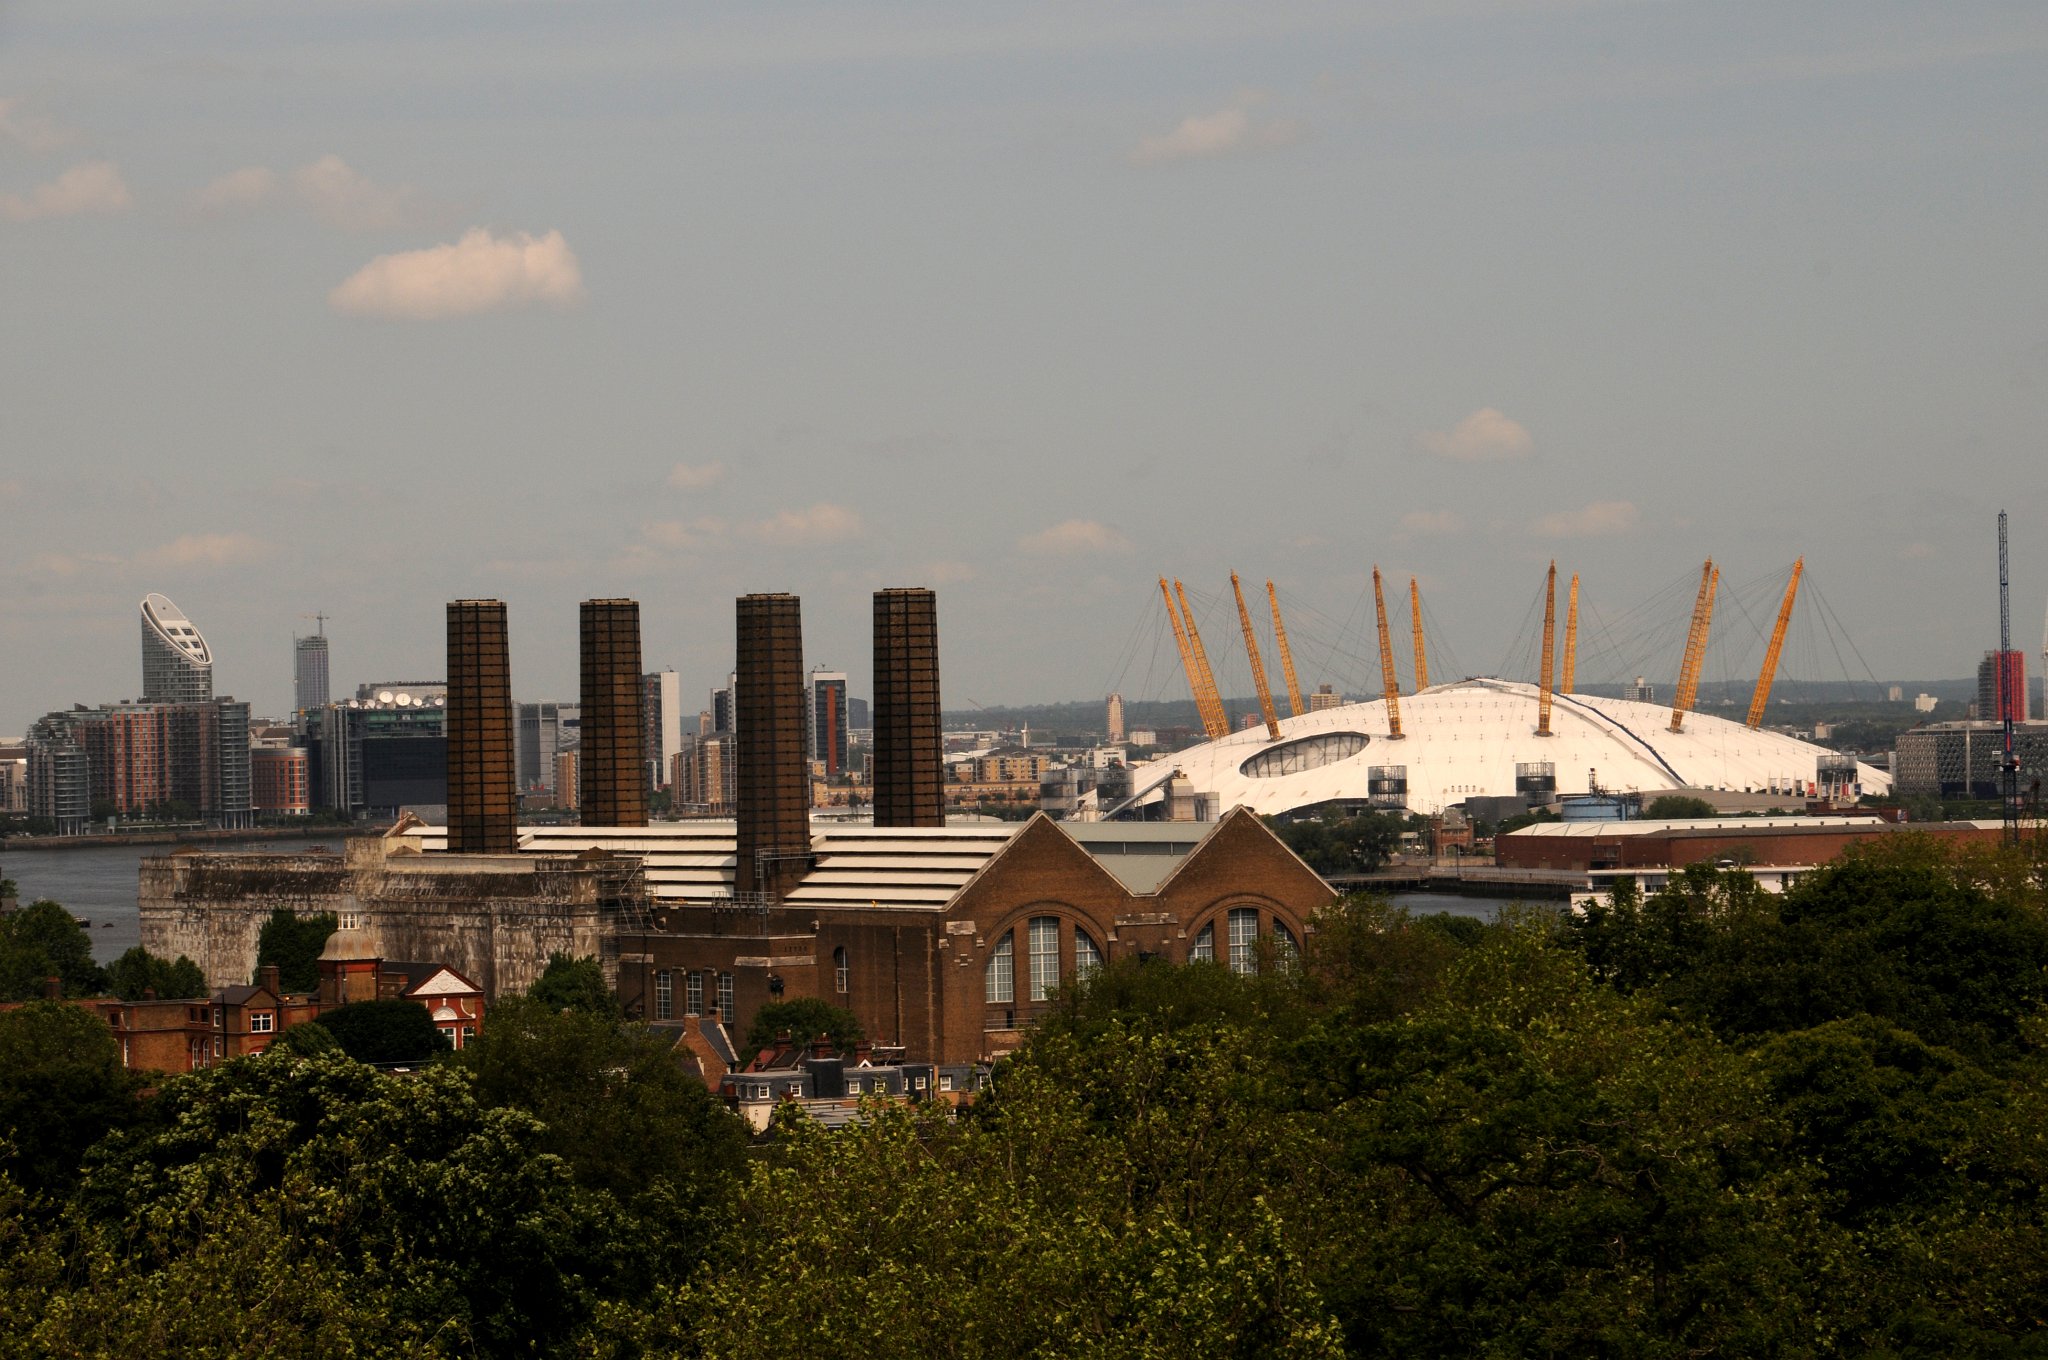 DSC_4063_2.jpg - Pohled z Greenwich na Millennium Dome. Dóm je největší samostatně zastřešenou stavbou světa. Z vnějšku vypadá jako velký bílý kupolovitý stan s dvanácti 95 m vysokými žlutými podpěrnými sloupy. Průměr kruhové stavby je 365 m. Je snadno viditelný na leteckých snímcích Londýna. Tvarem připomíná dóm postavený pro Britský festival roku 1951. Architektem stavby byl Richard Rogers. Materiál střechy je teflon potažený tkaninou ze skleněných vláken. Hmotnost vlastní střechy je menší než hmotnost vzduchu uzavřeného její konstrukcí a ve středu budovy Millennium Dome se střecha vypíná do výšky 50 m. Její plocha je přerušena otvorem, kterým vede ventilace z Blackwallského tunelu. Velvo je pak Greenwich Electric Power Station.